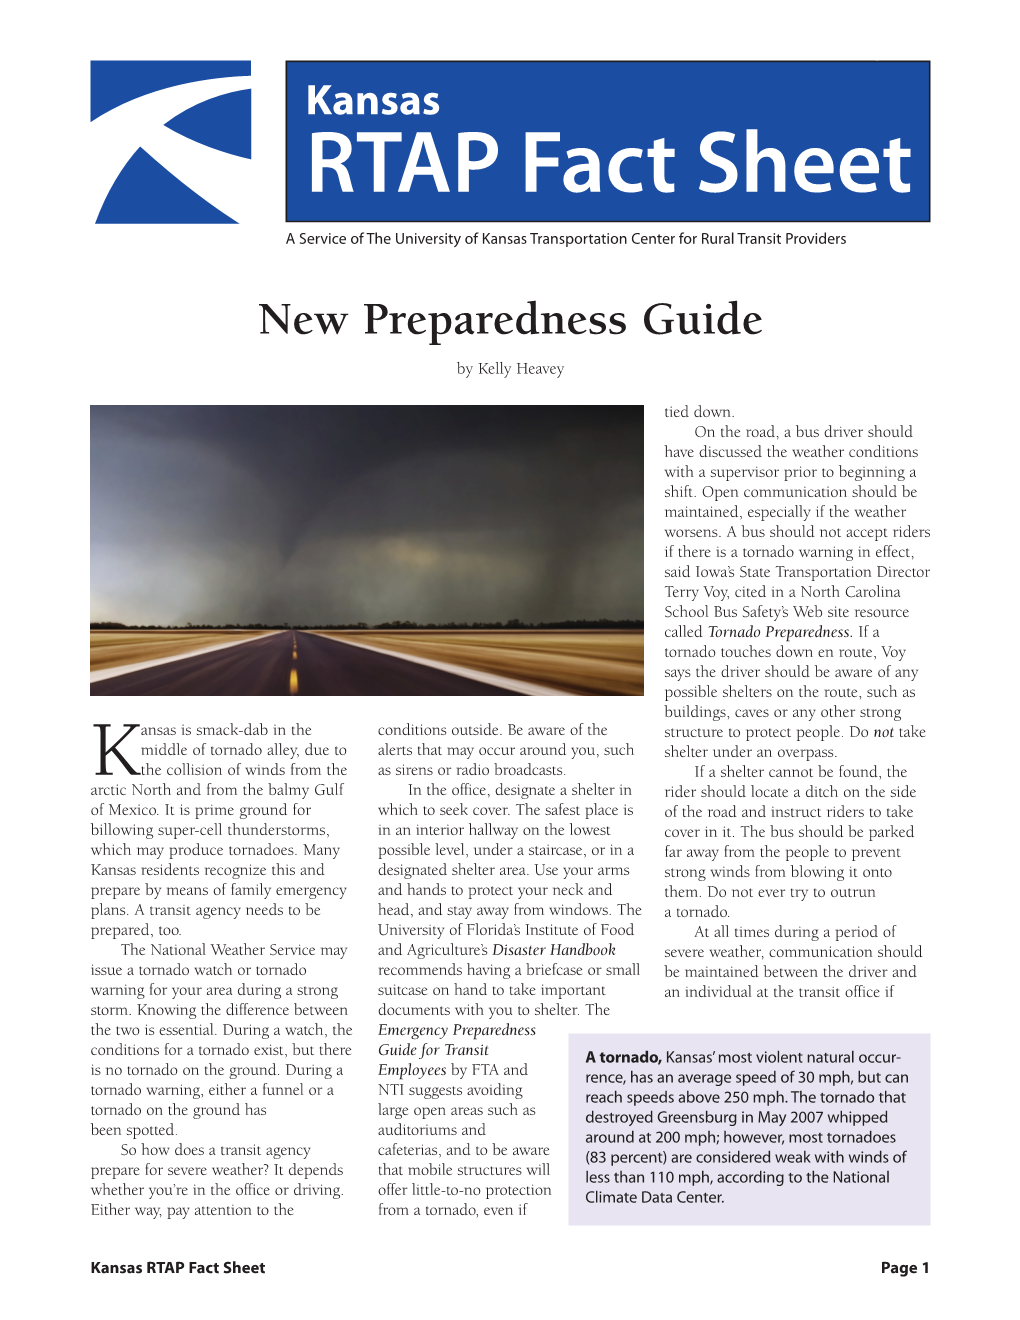 RTAP Fact Sheet